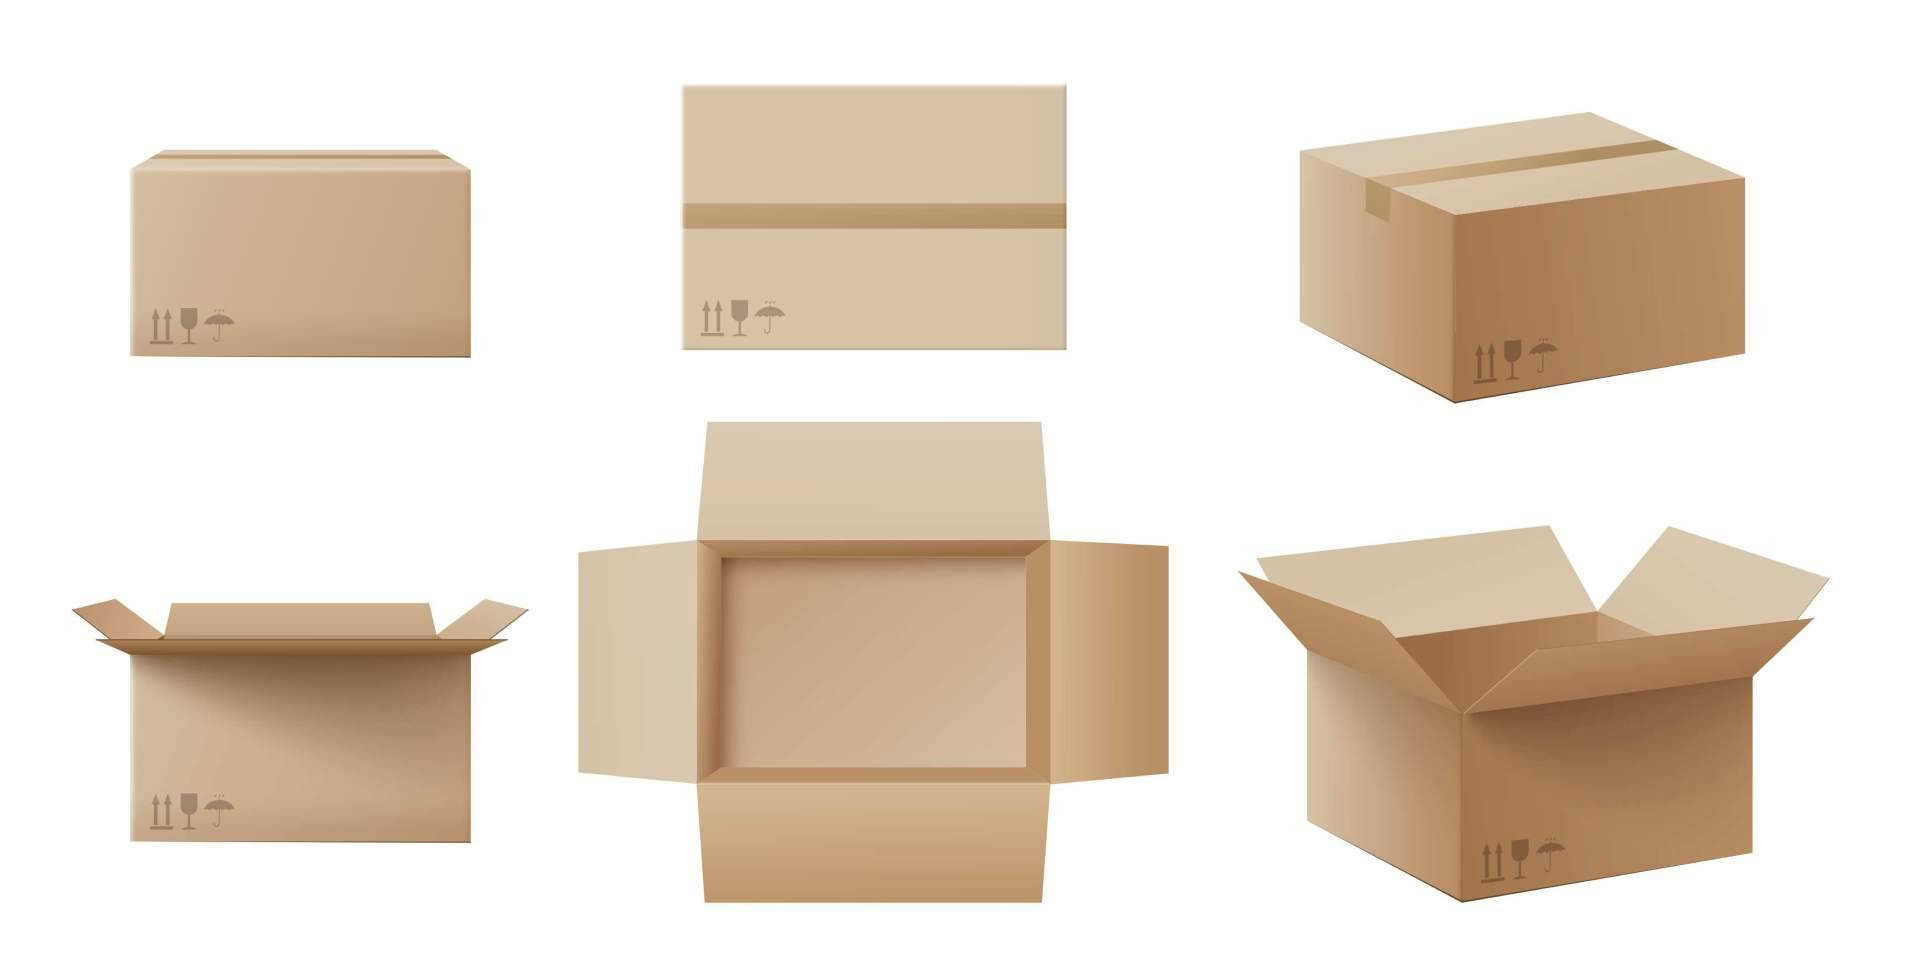  Cajas de cartón de calidad a precios accesibles, de la mano de TodoAlmacén - EMBEX 